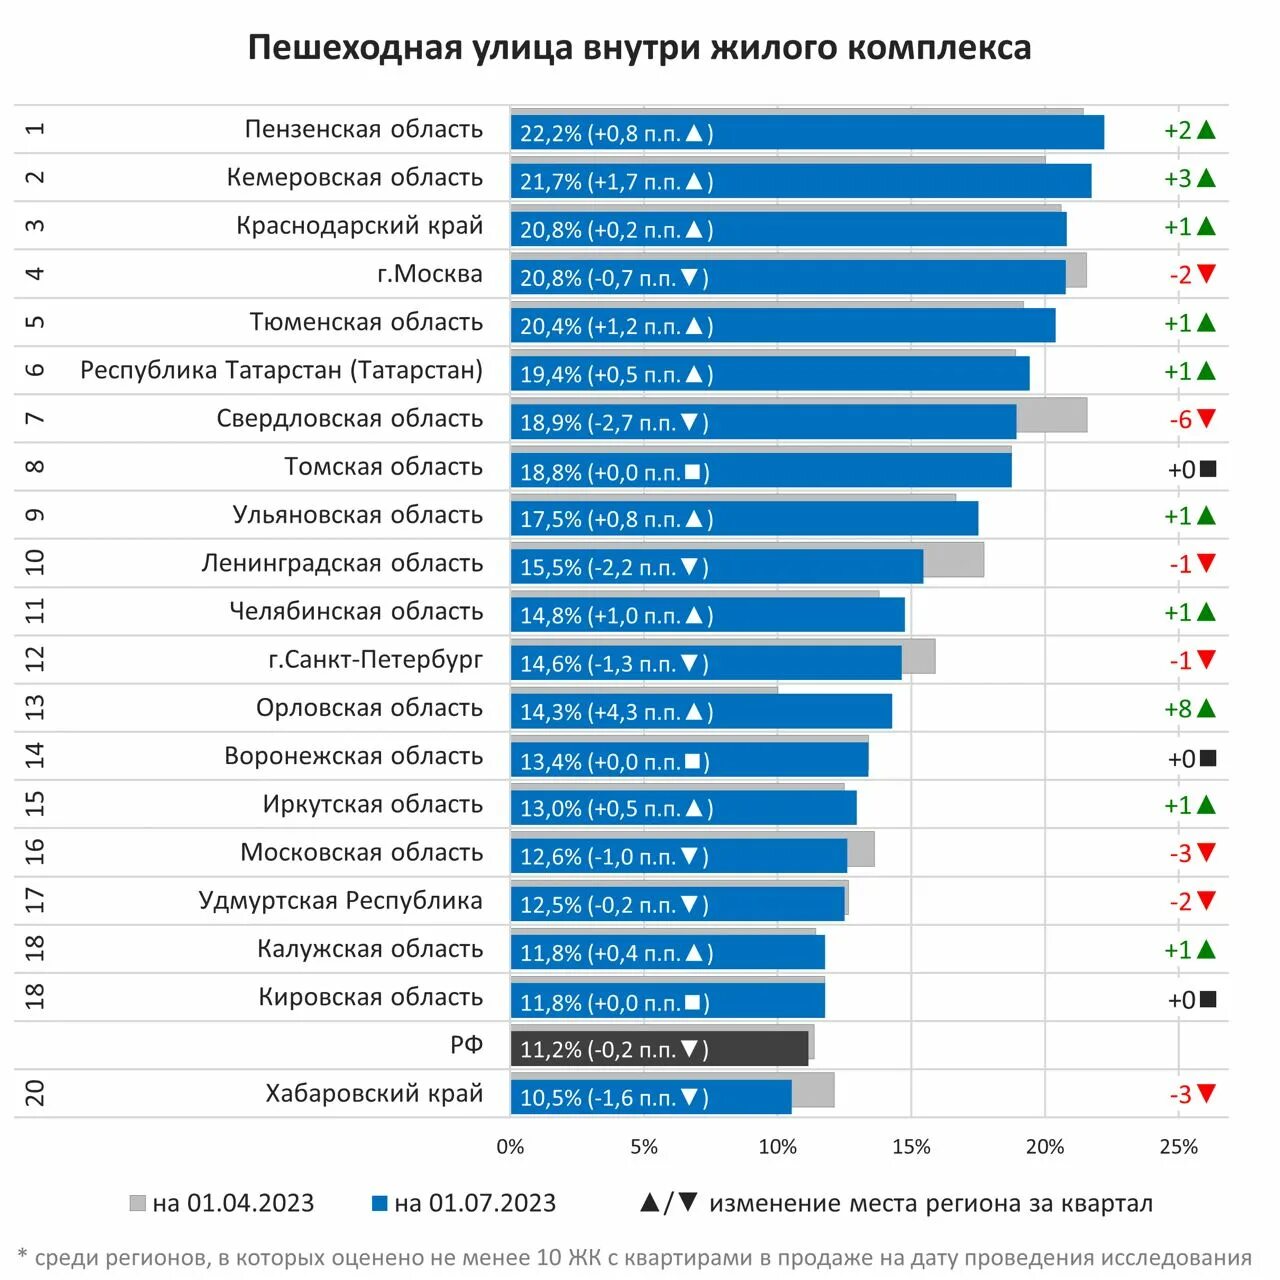 Население Москвы на 2023 год. Какие есть рейтинги. Население России на 2023. Крупнейшие застройщики России 2023. Топ автомобилей 2023 в россии